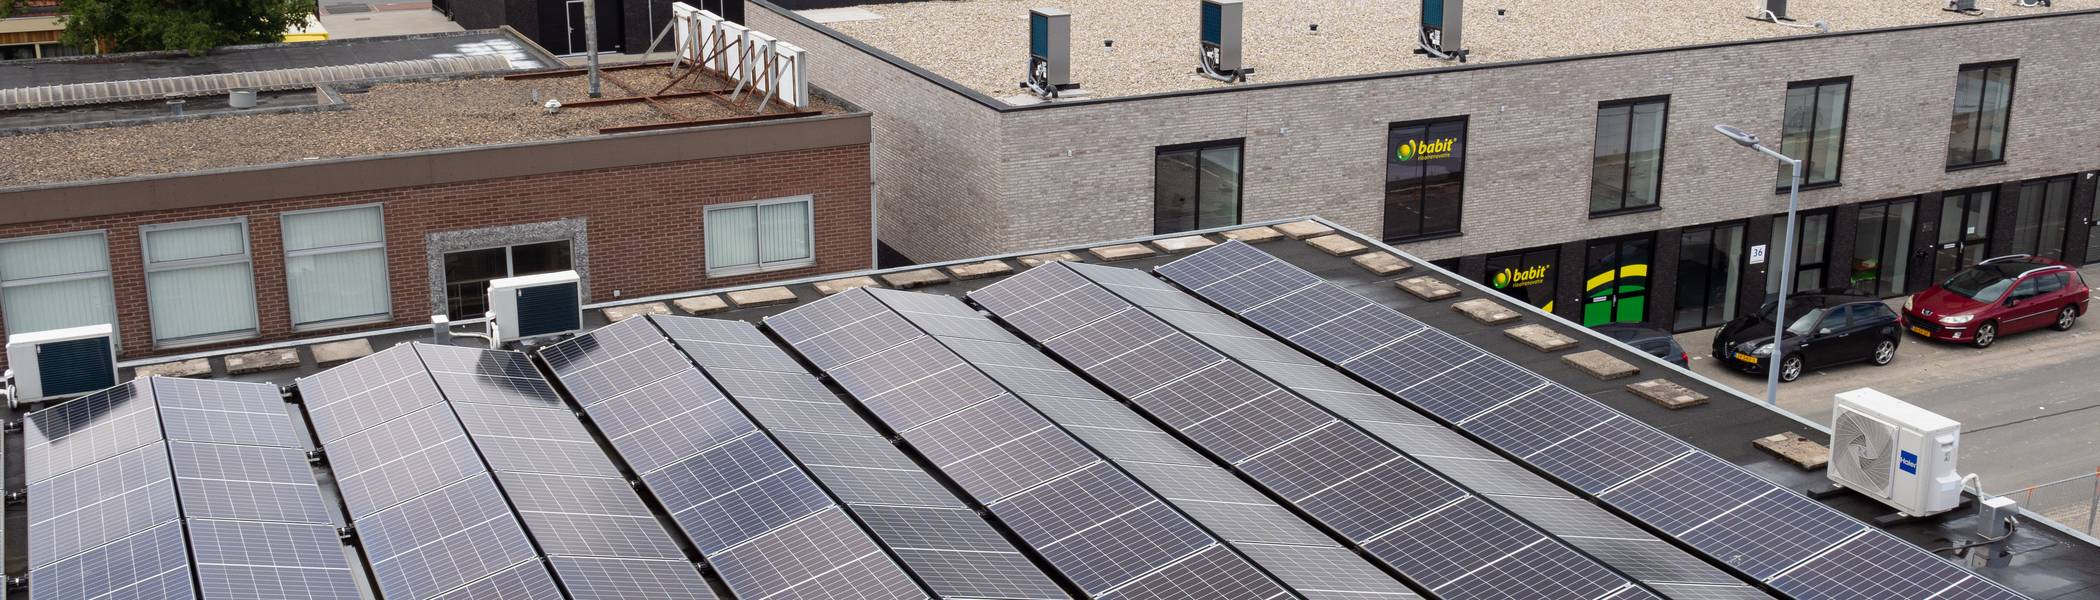 Bedrijf met zonnepanelen op het dak op een bedrijventerrein